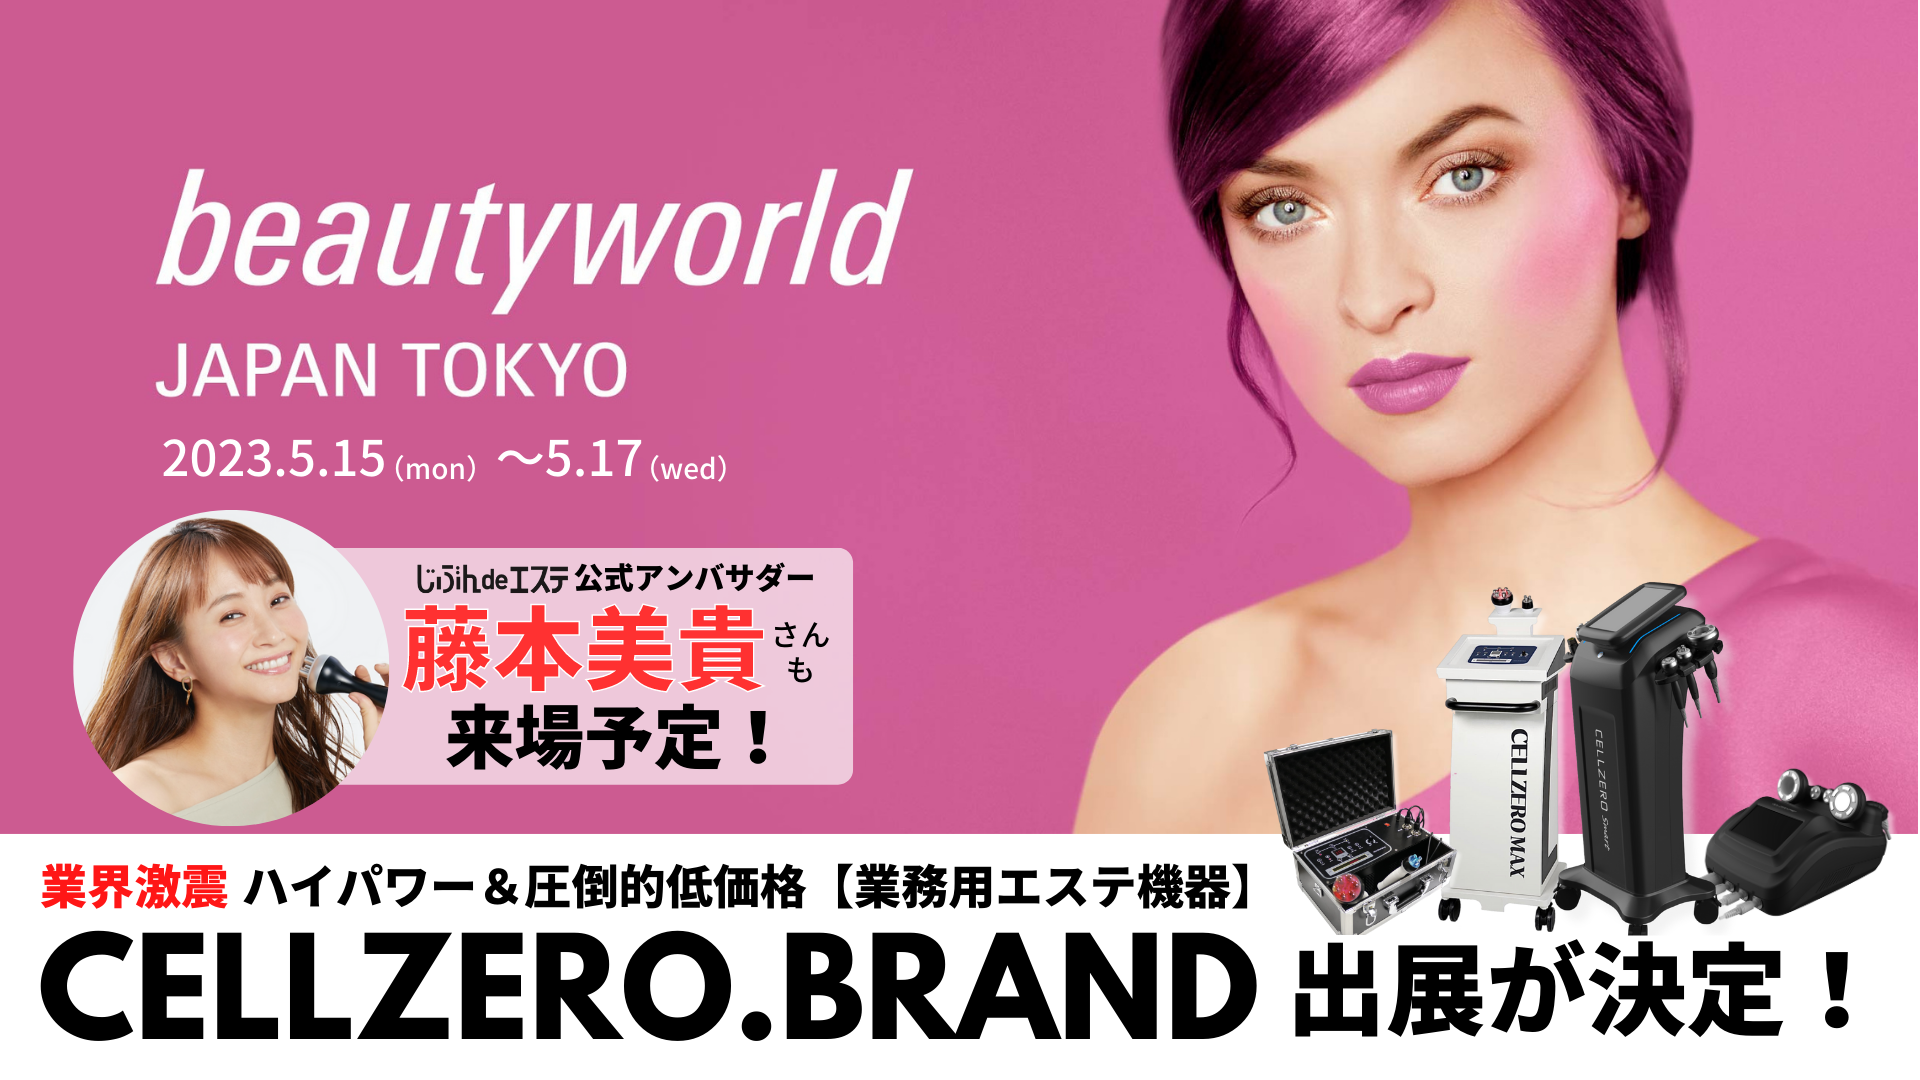 タレント藤本美貴さんも来場！200万人以上が利用した業務用エステマシン「CELLZERO.BRAND」が美容展示会「Beauty World JAPAN TOKYO」に出展